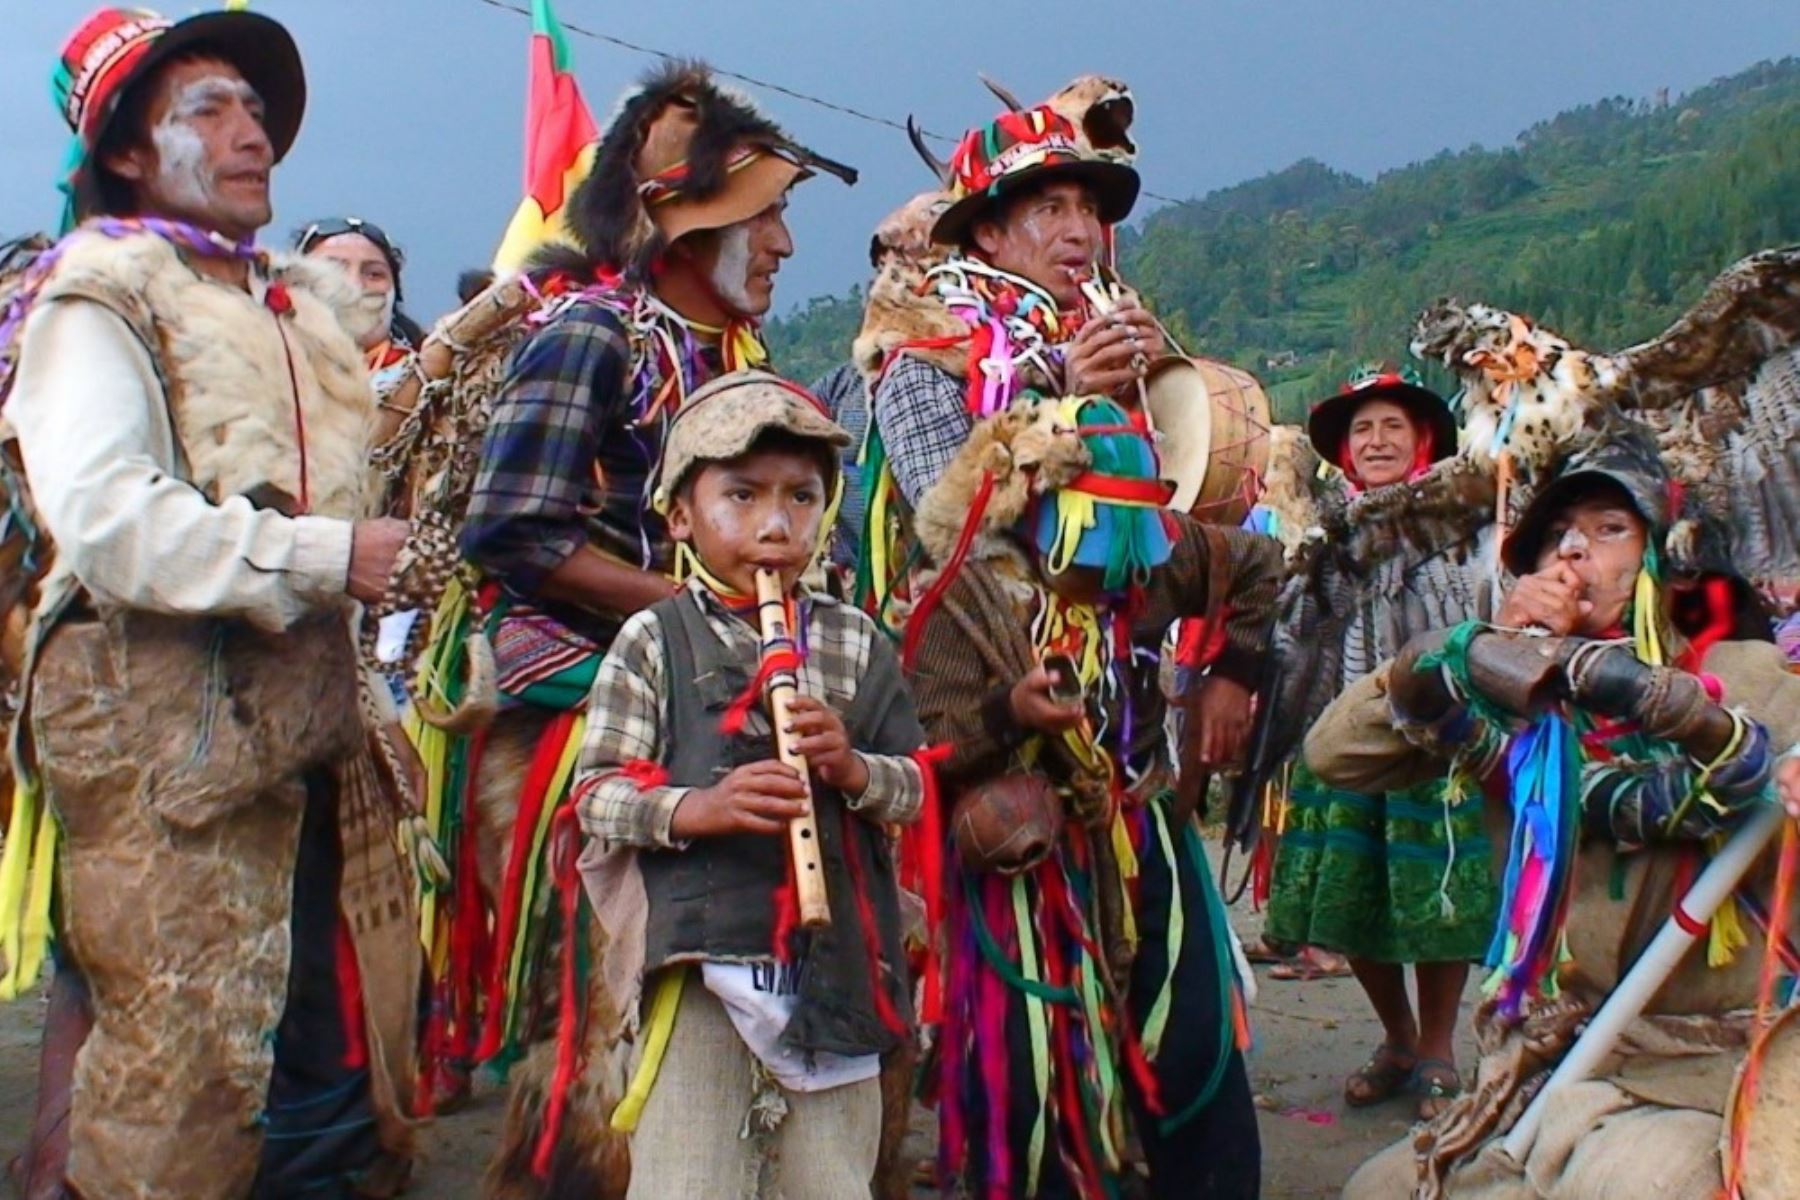 Los carnavales son la máxima expresión de júbilo y colorido en los que se manifiesta la vasta riqueza cultural del Perú, así como la entrañable identidad regional y orgullo de los pueblos expresada en danzas, música y tradiciones que trascienden al tiempo.  ANDINA/Difusión